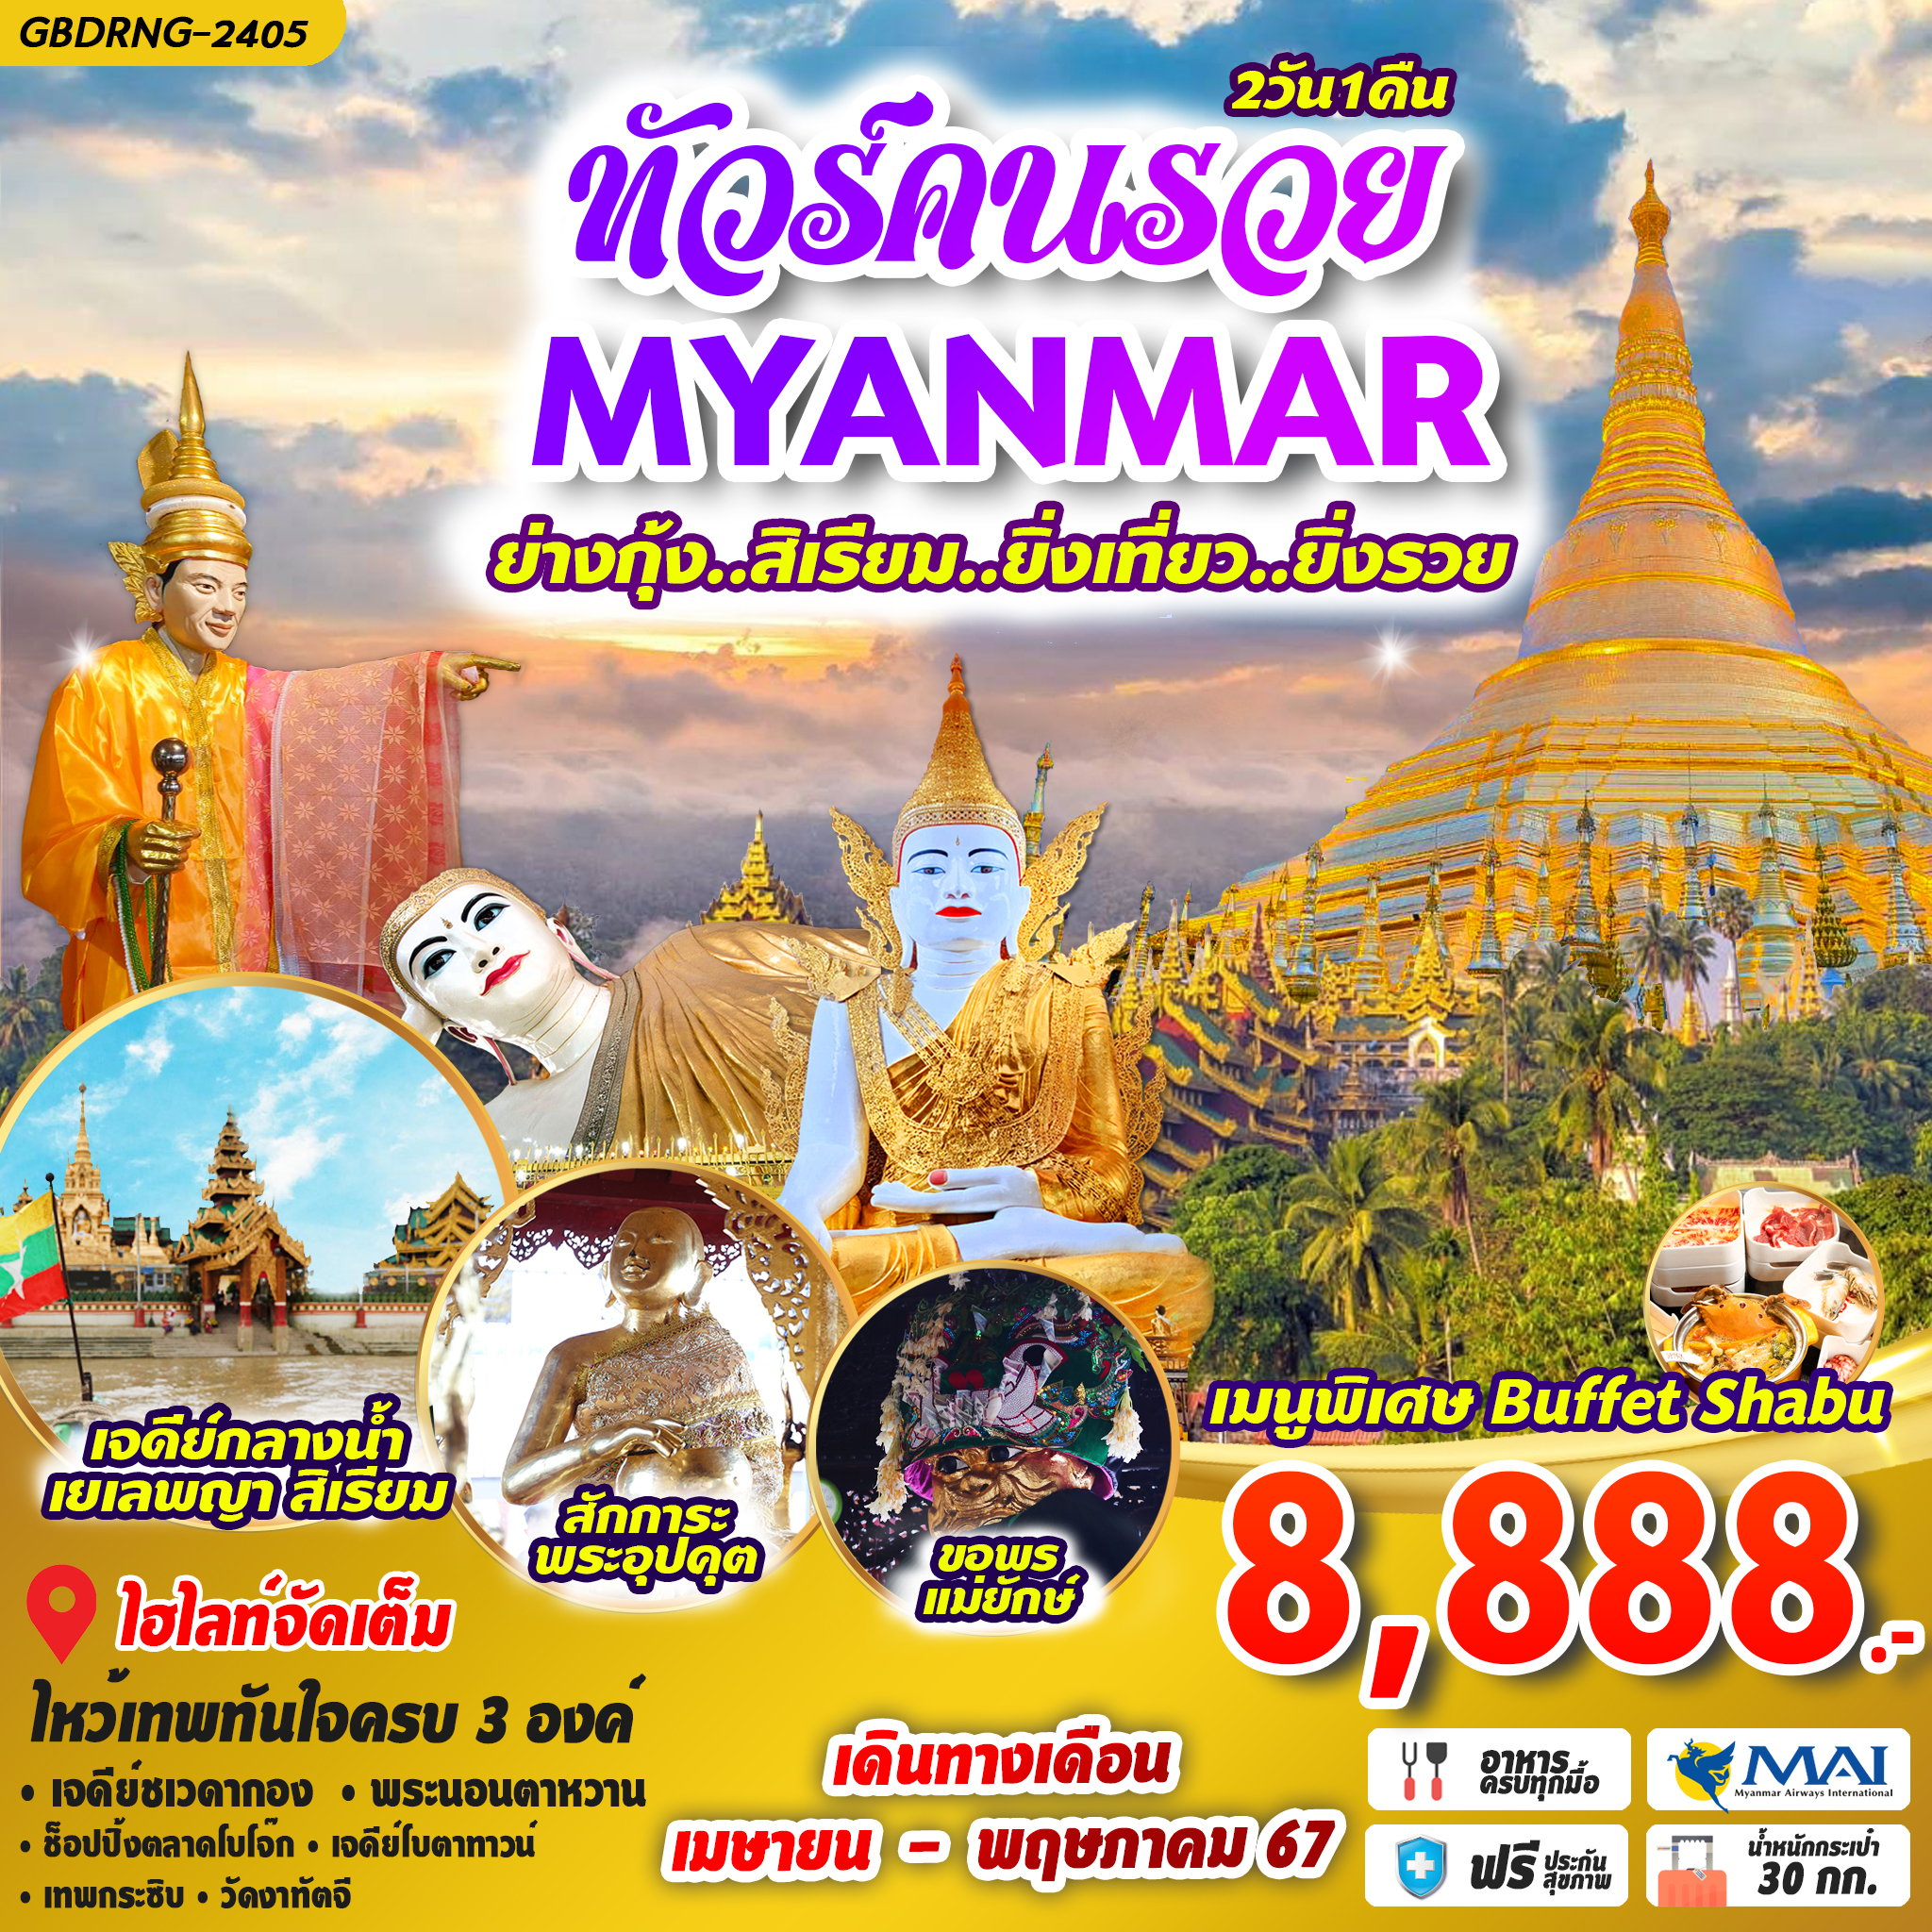 ทัวร์คนรวย พม่า ย่างกุ้ง สิเรียม 2 วัน 1 คืน by Myanmar Airways International